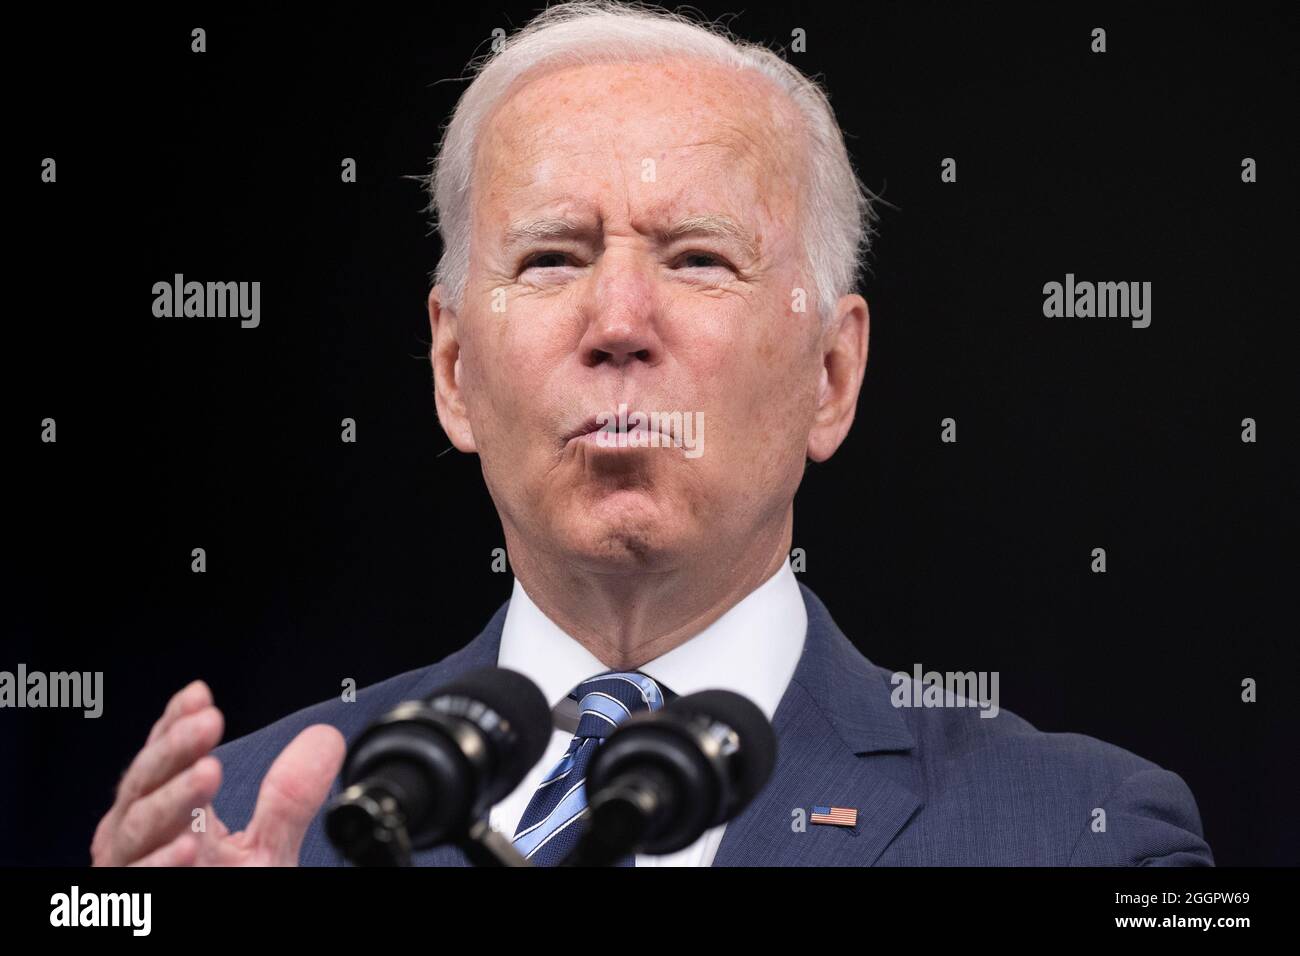 LE président AMÉRICAIN Joe Biden prononce un discours sur l'ouragan Ida le 2 septembre 2021. Crédit: Michael Reynolds/Pool via CNP/MediaPunch Banque D'Images